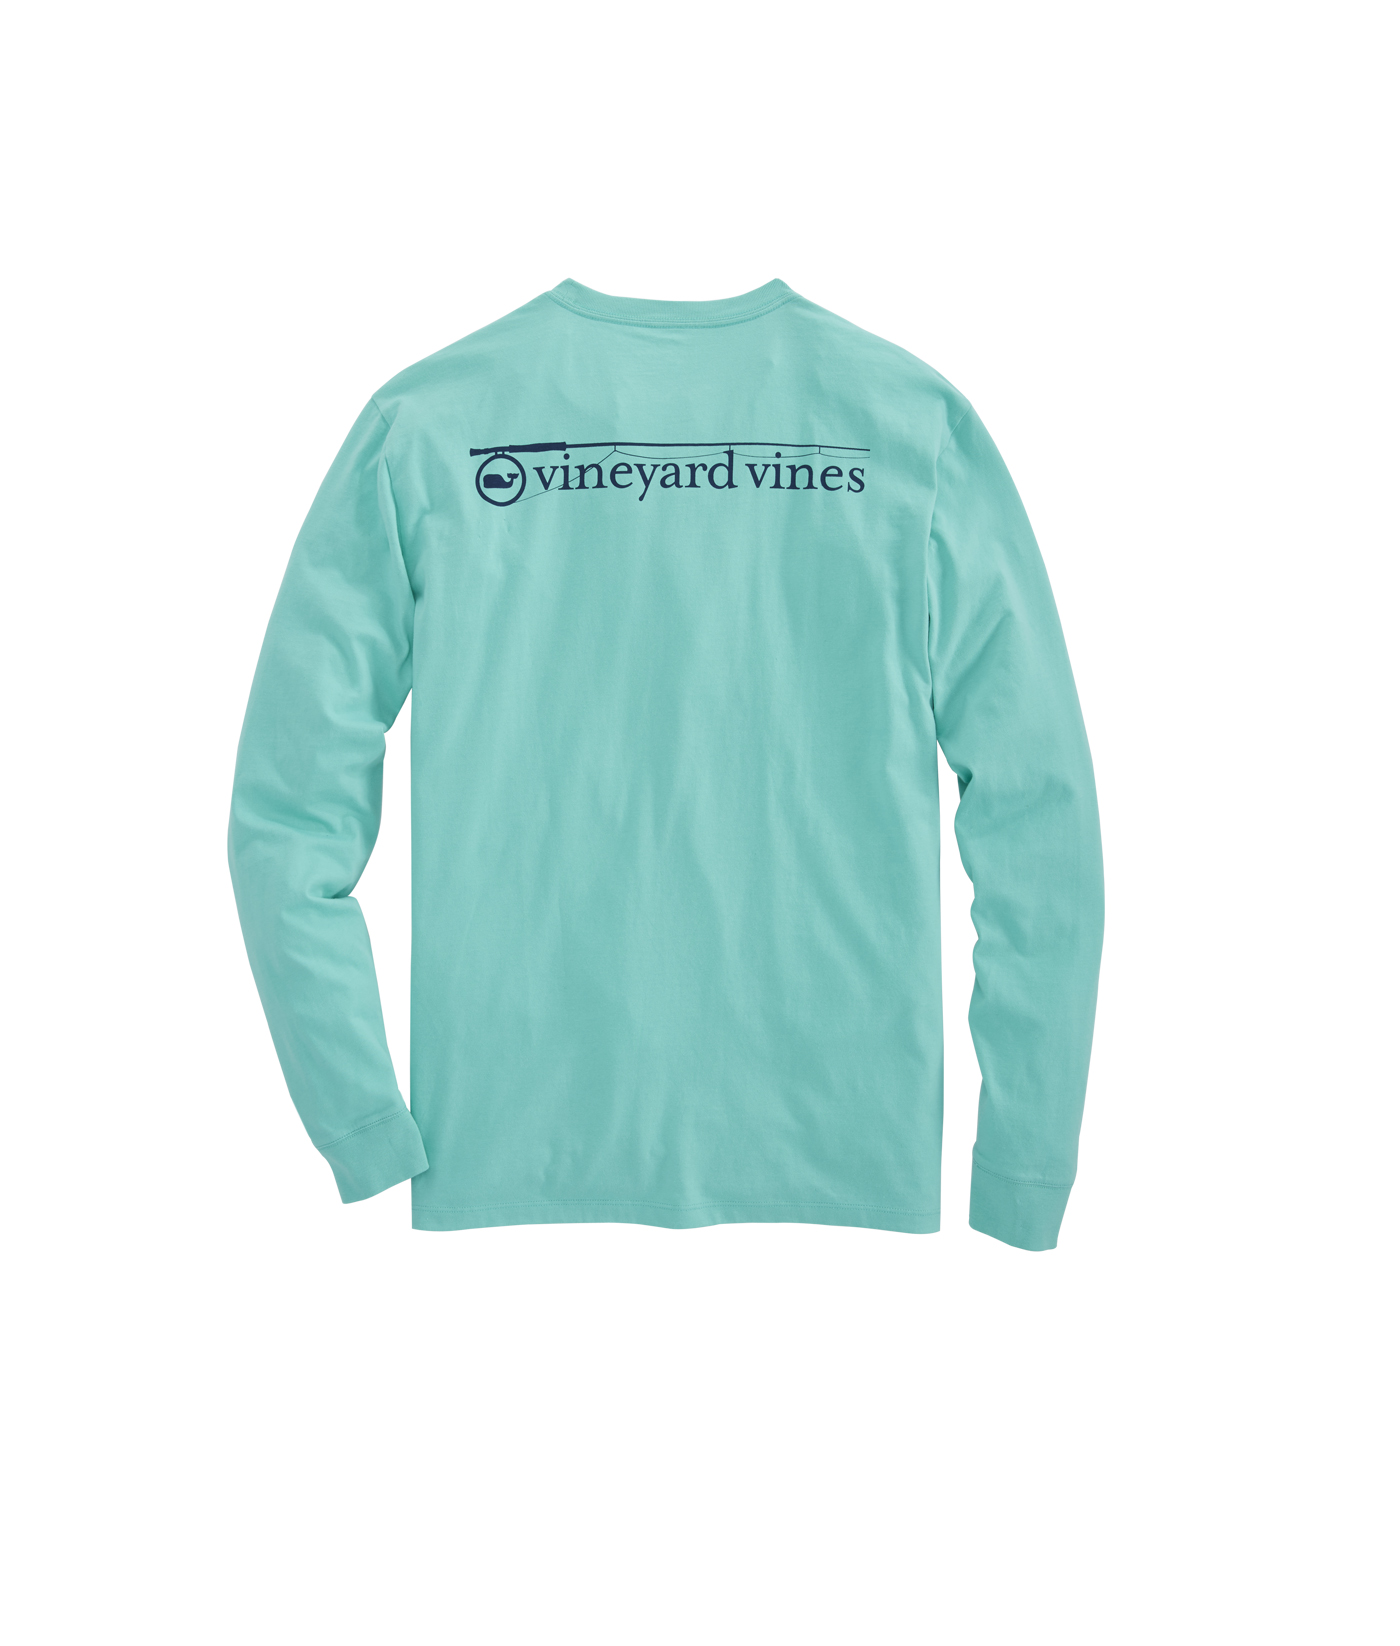 Fishing Shirts for Girls - Fishing Shirt - Kids Fishing Shirts - Fishing  Master T-Shirt - Fishing Gift Shirt